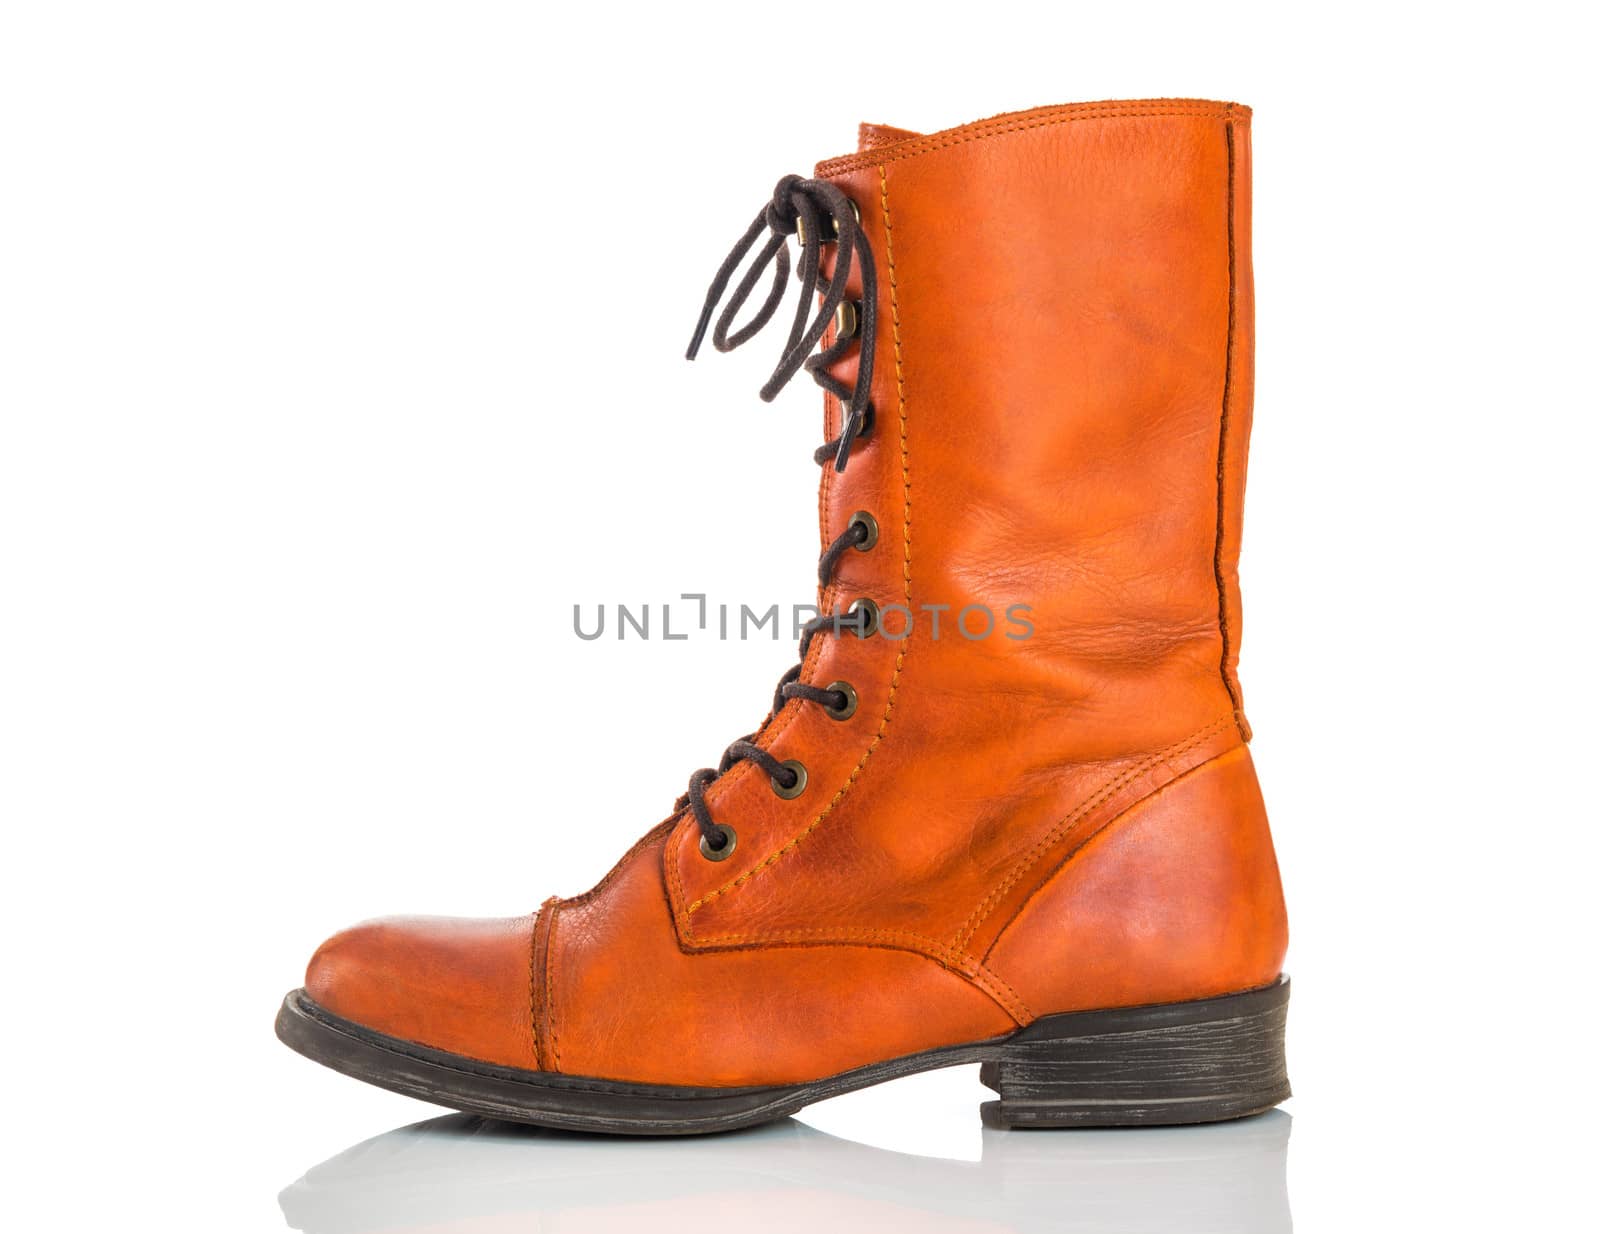 Stylish orange leather boot, isolated on white background.